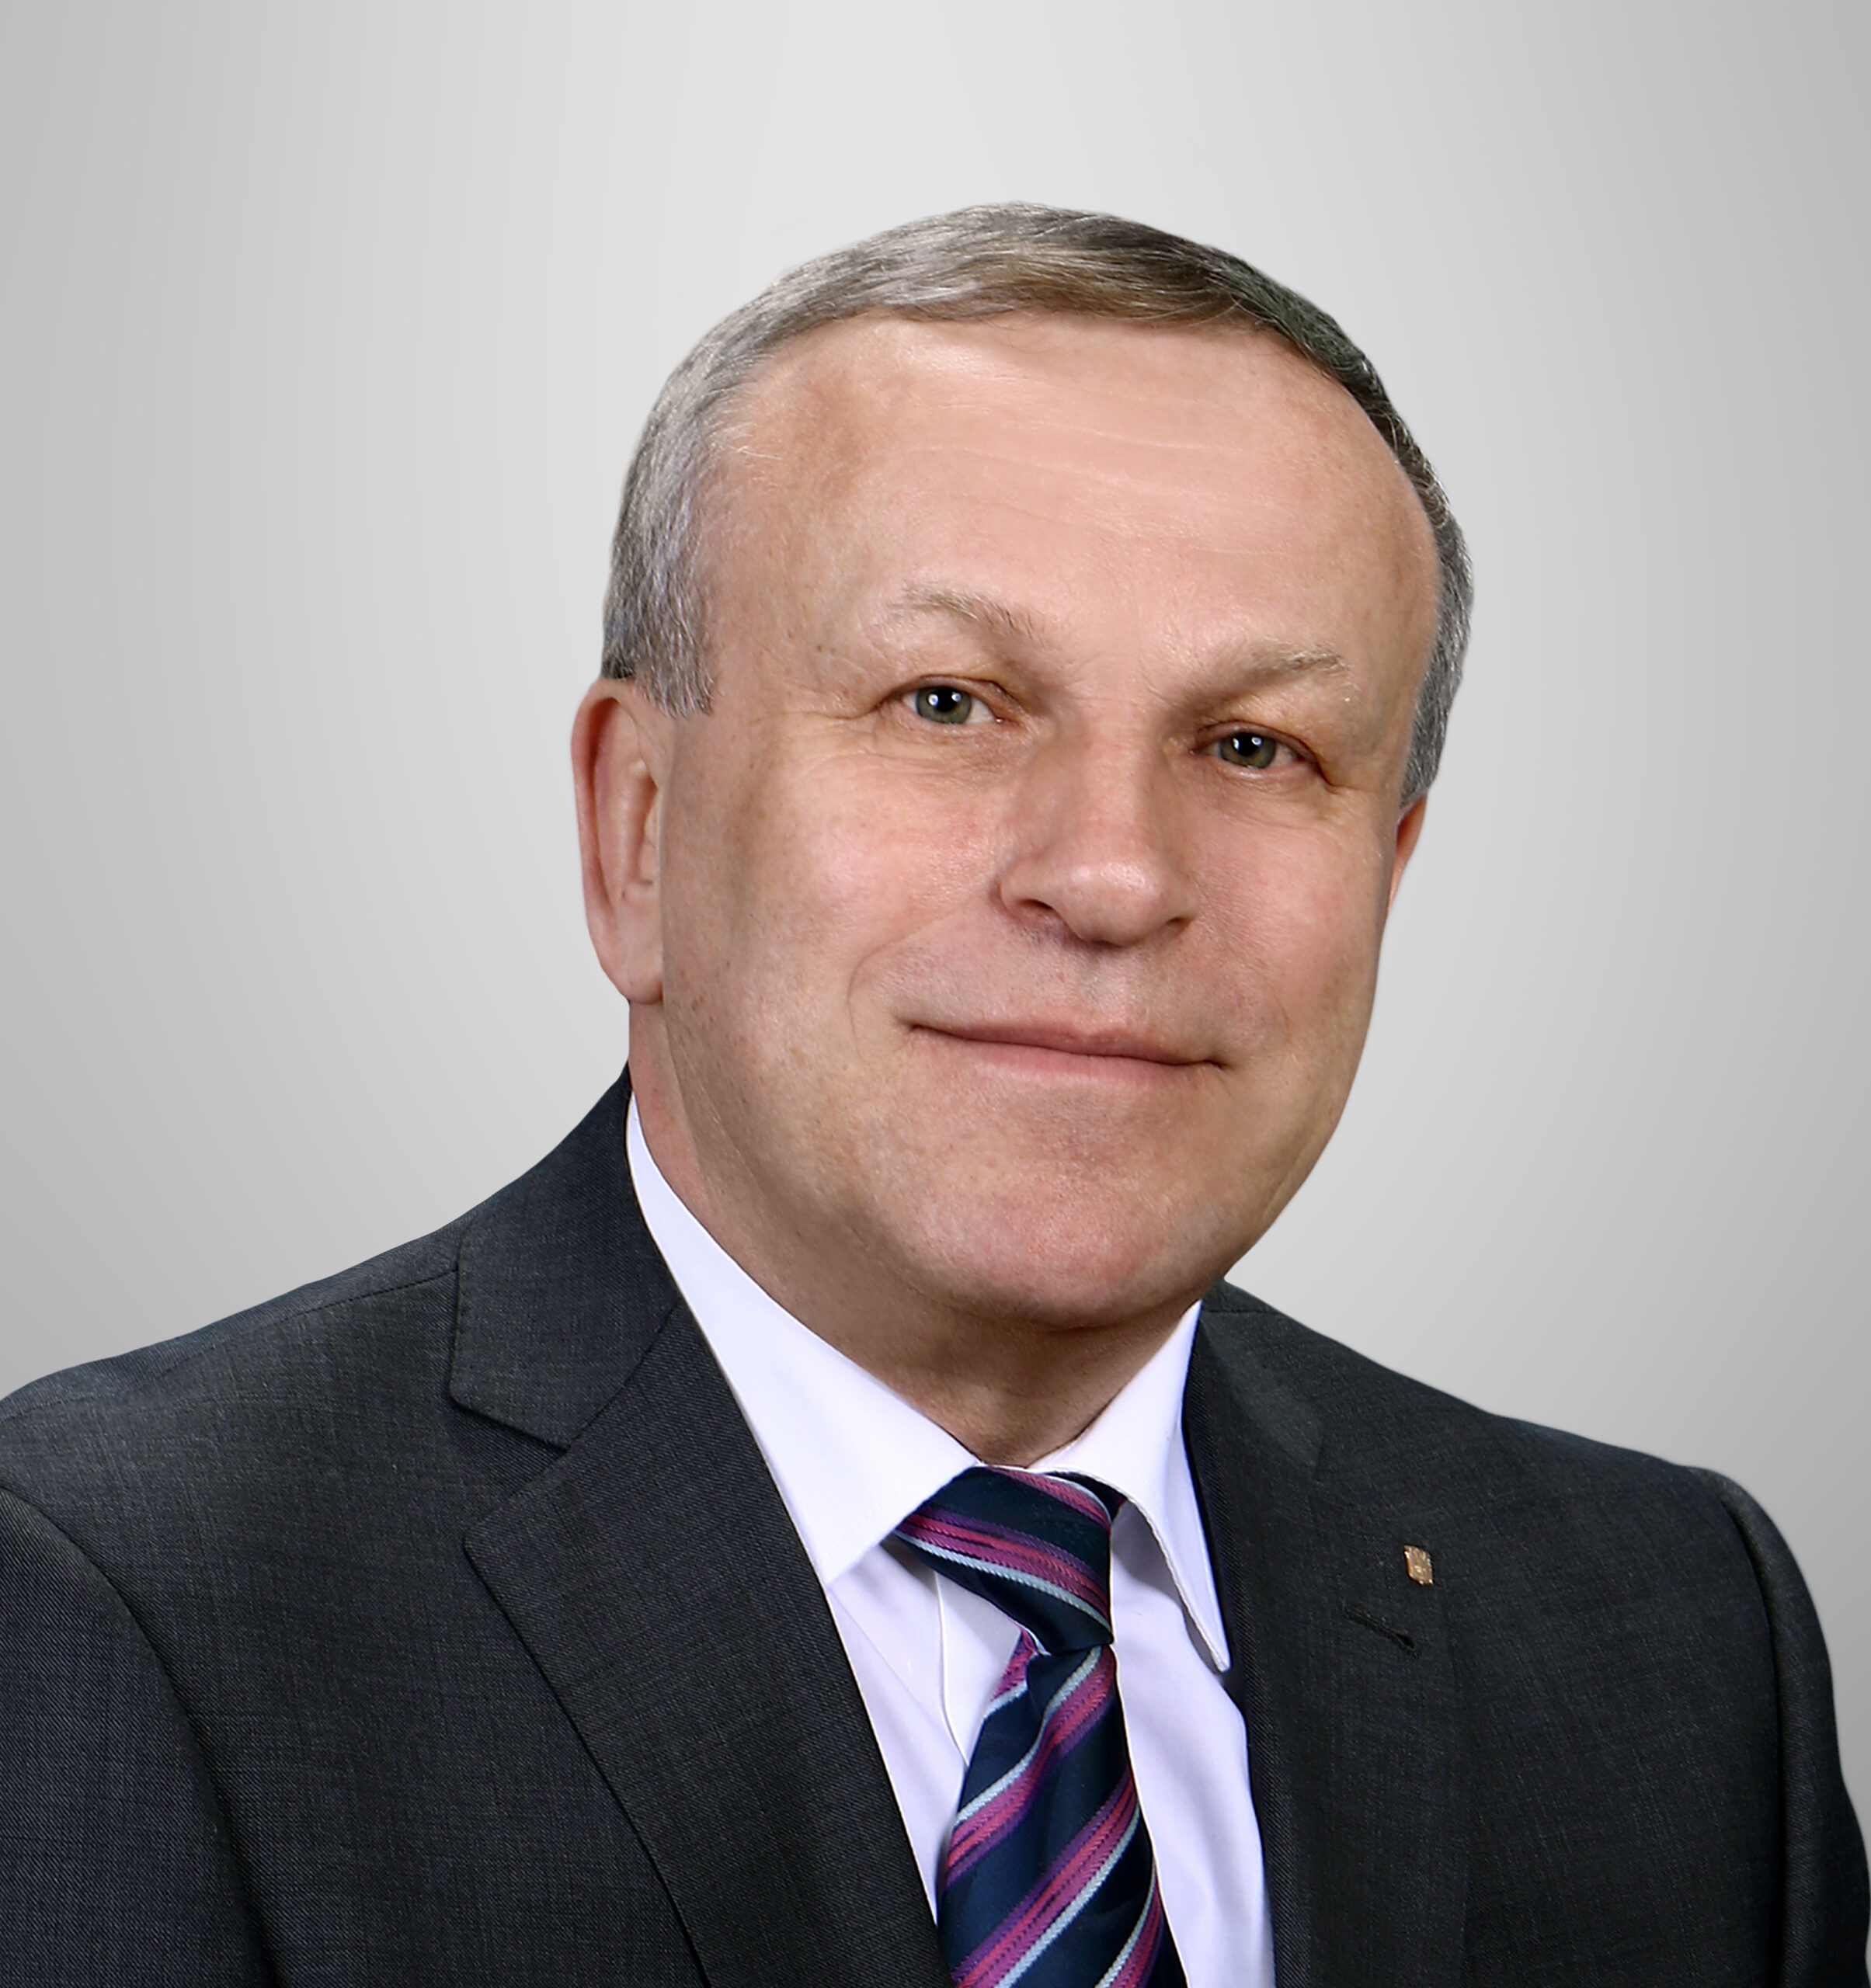 Председатель горисполкома Владимир Цумарев: “Ориентир на упорную работу и уверенность в завтрашнем дне”